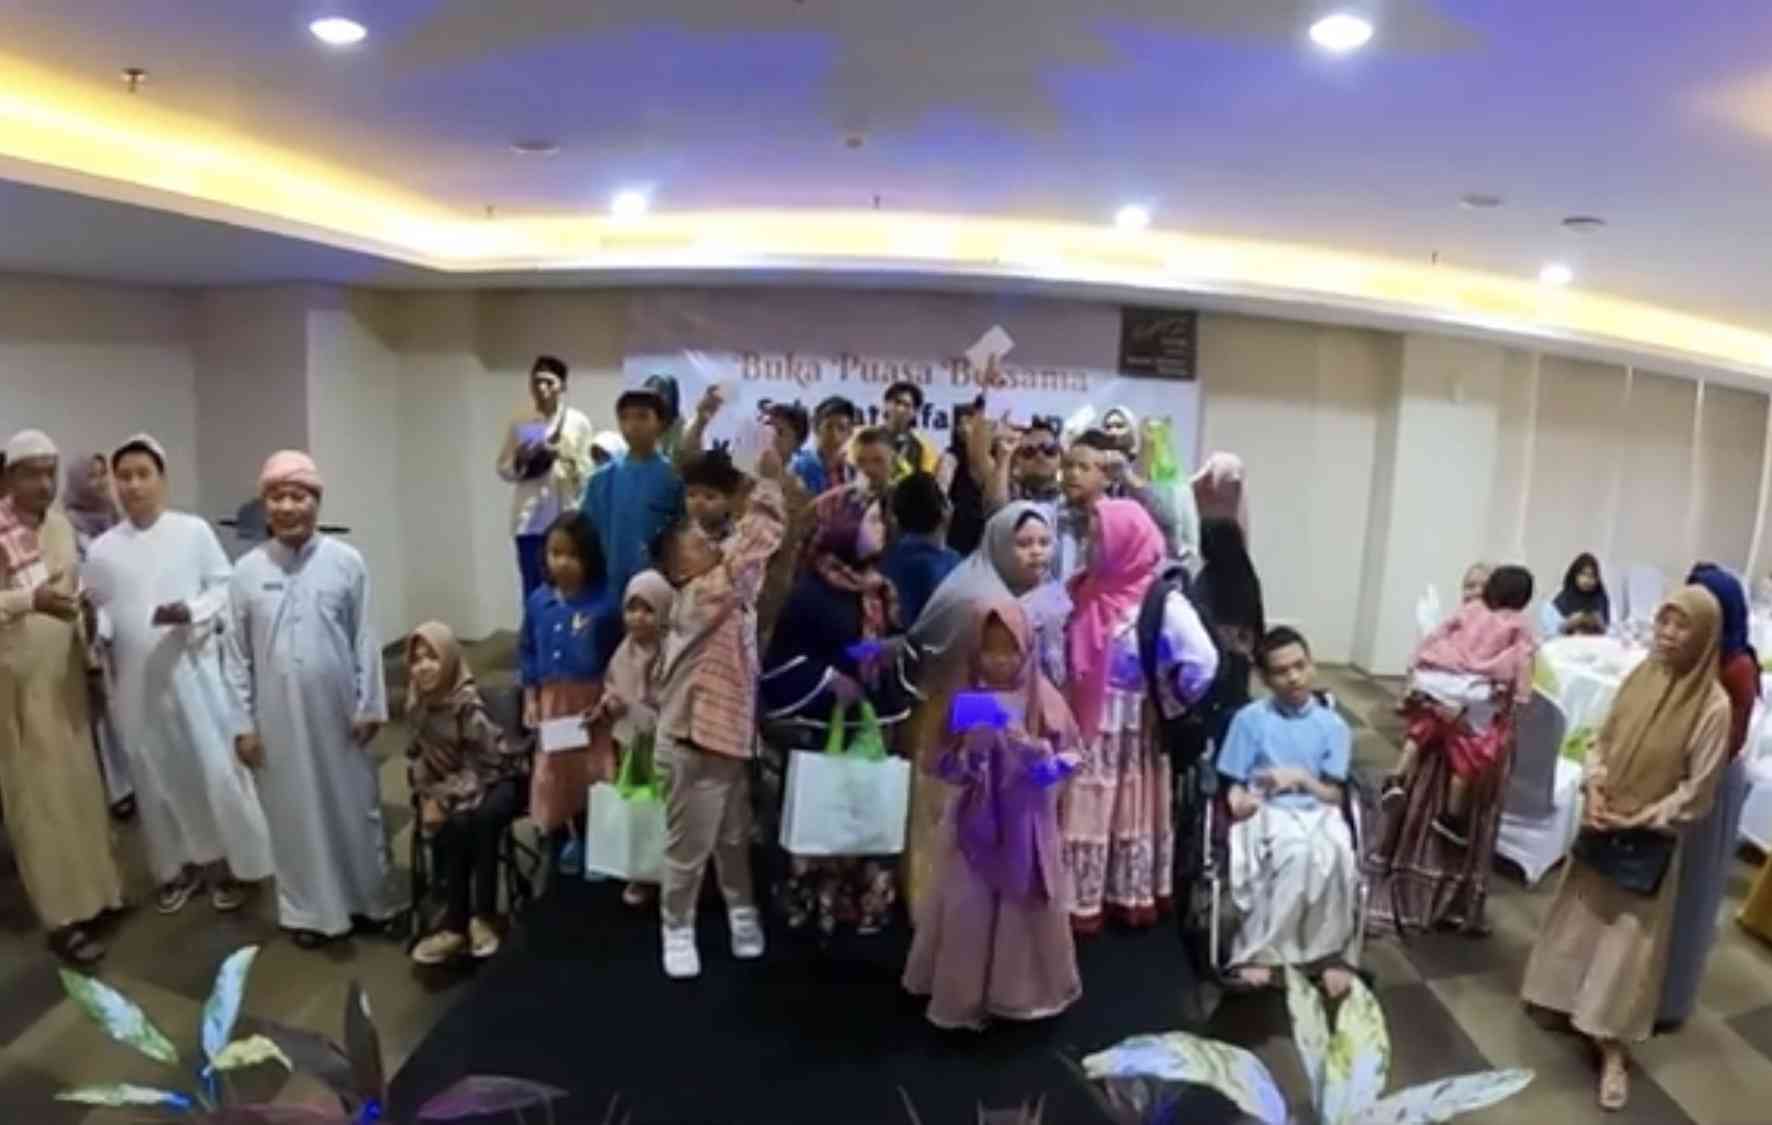 Buka Puasa Ramadhan Bersama Sahabat Difabel dan Komunitas Pejuang Mimpi yang Diadakan oleh Whiz Prime Hotel Malang